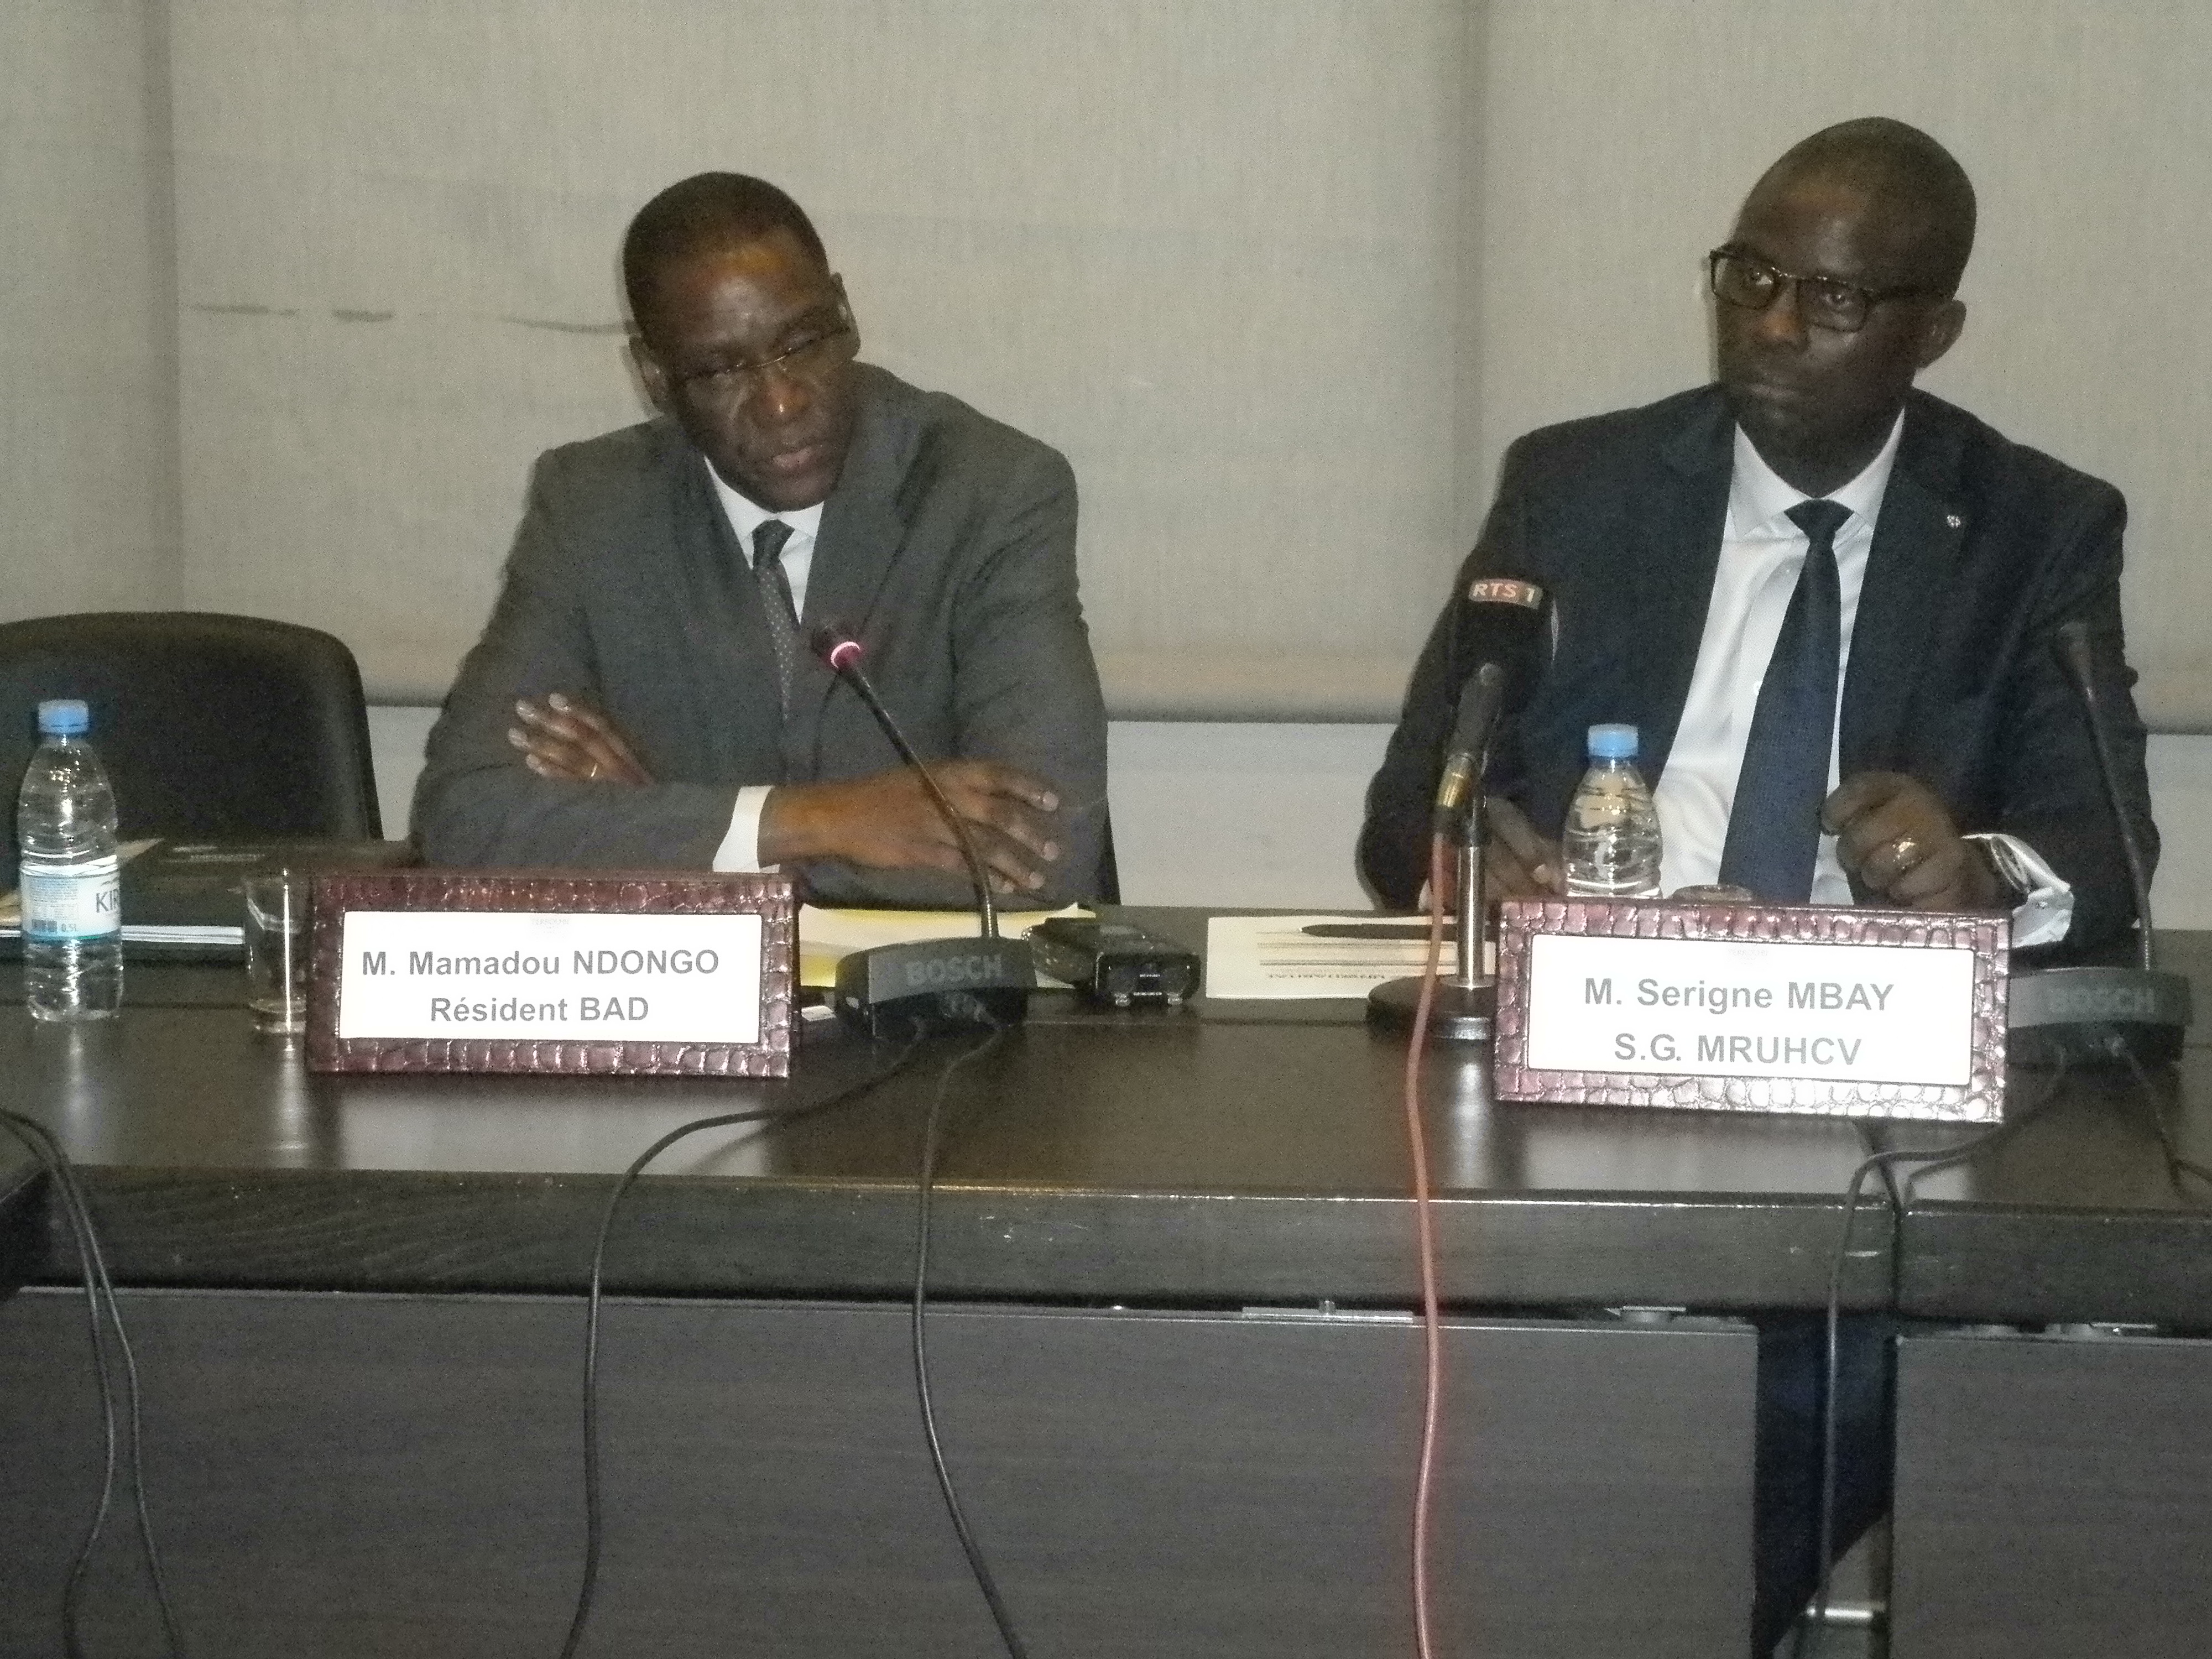 Habitat : L’urbanisation d’intensité croissante devrait se poursuivre au Sénégal, selon le SG du ministère de l’habitat